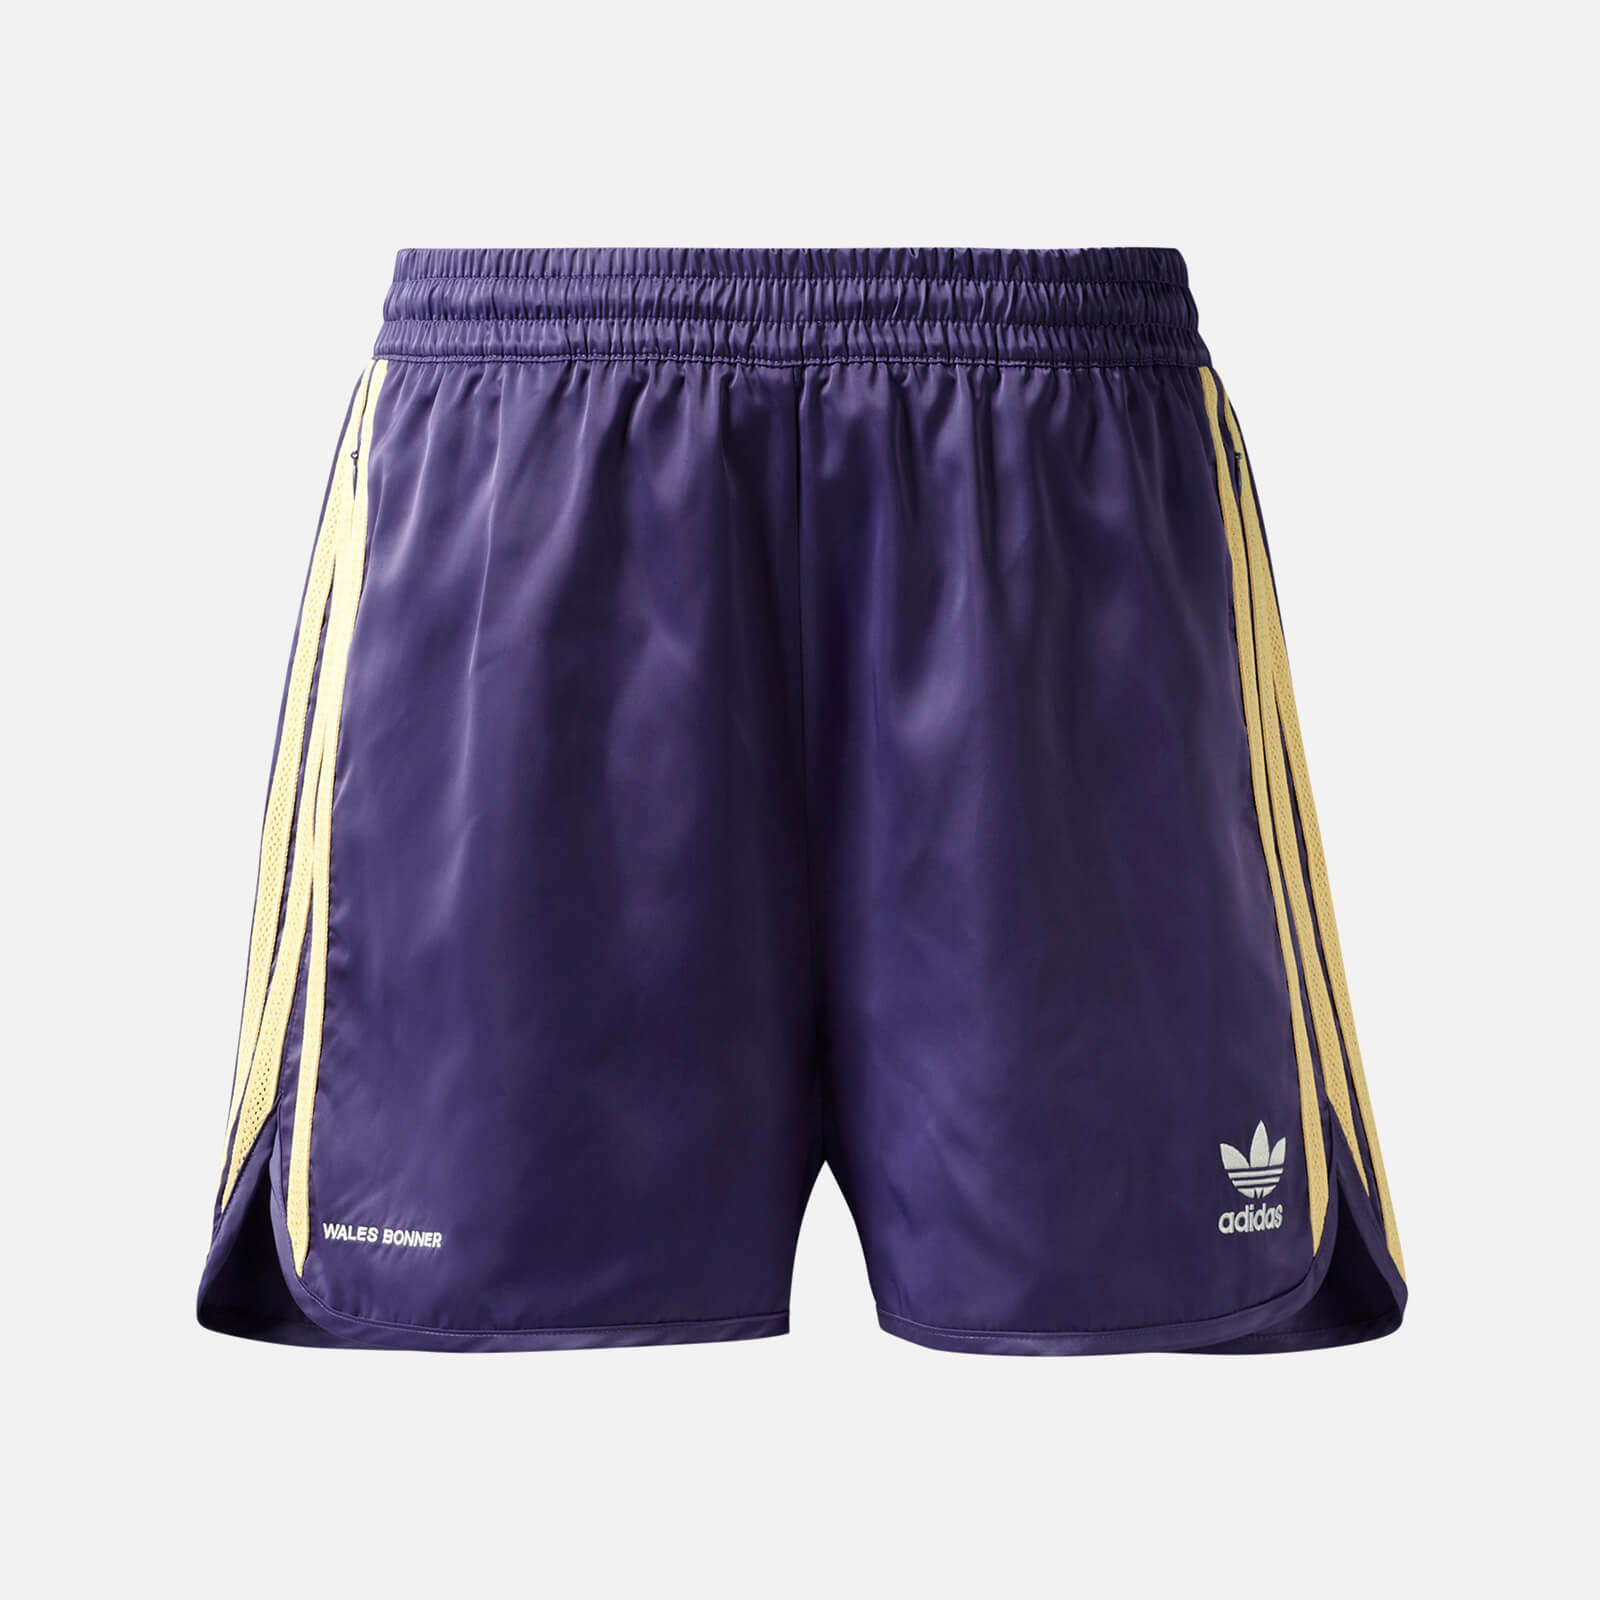 adidas X Wales Bonner Men's 70S Shorts - Unity Purple - L